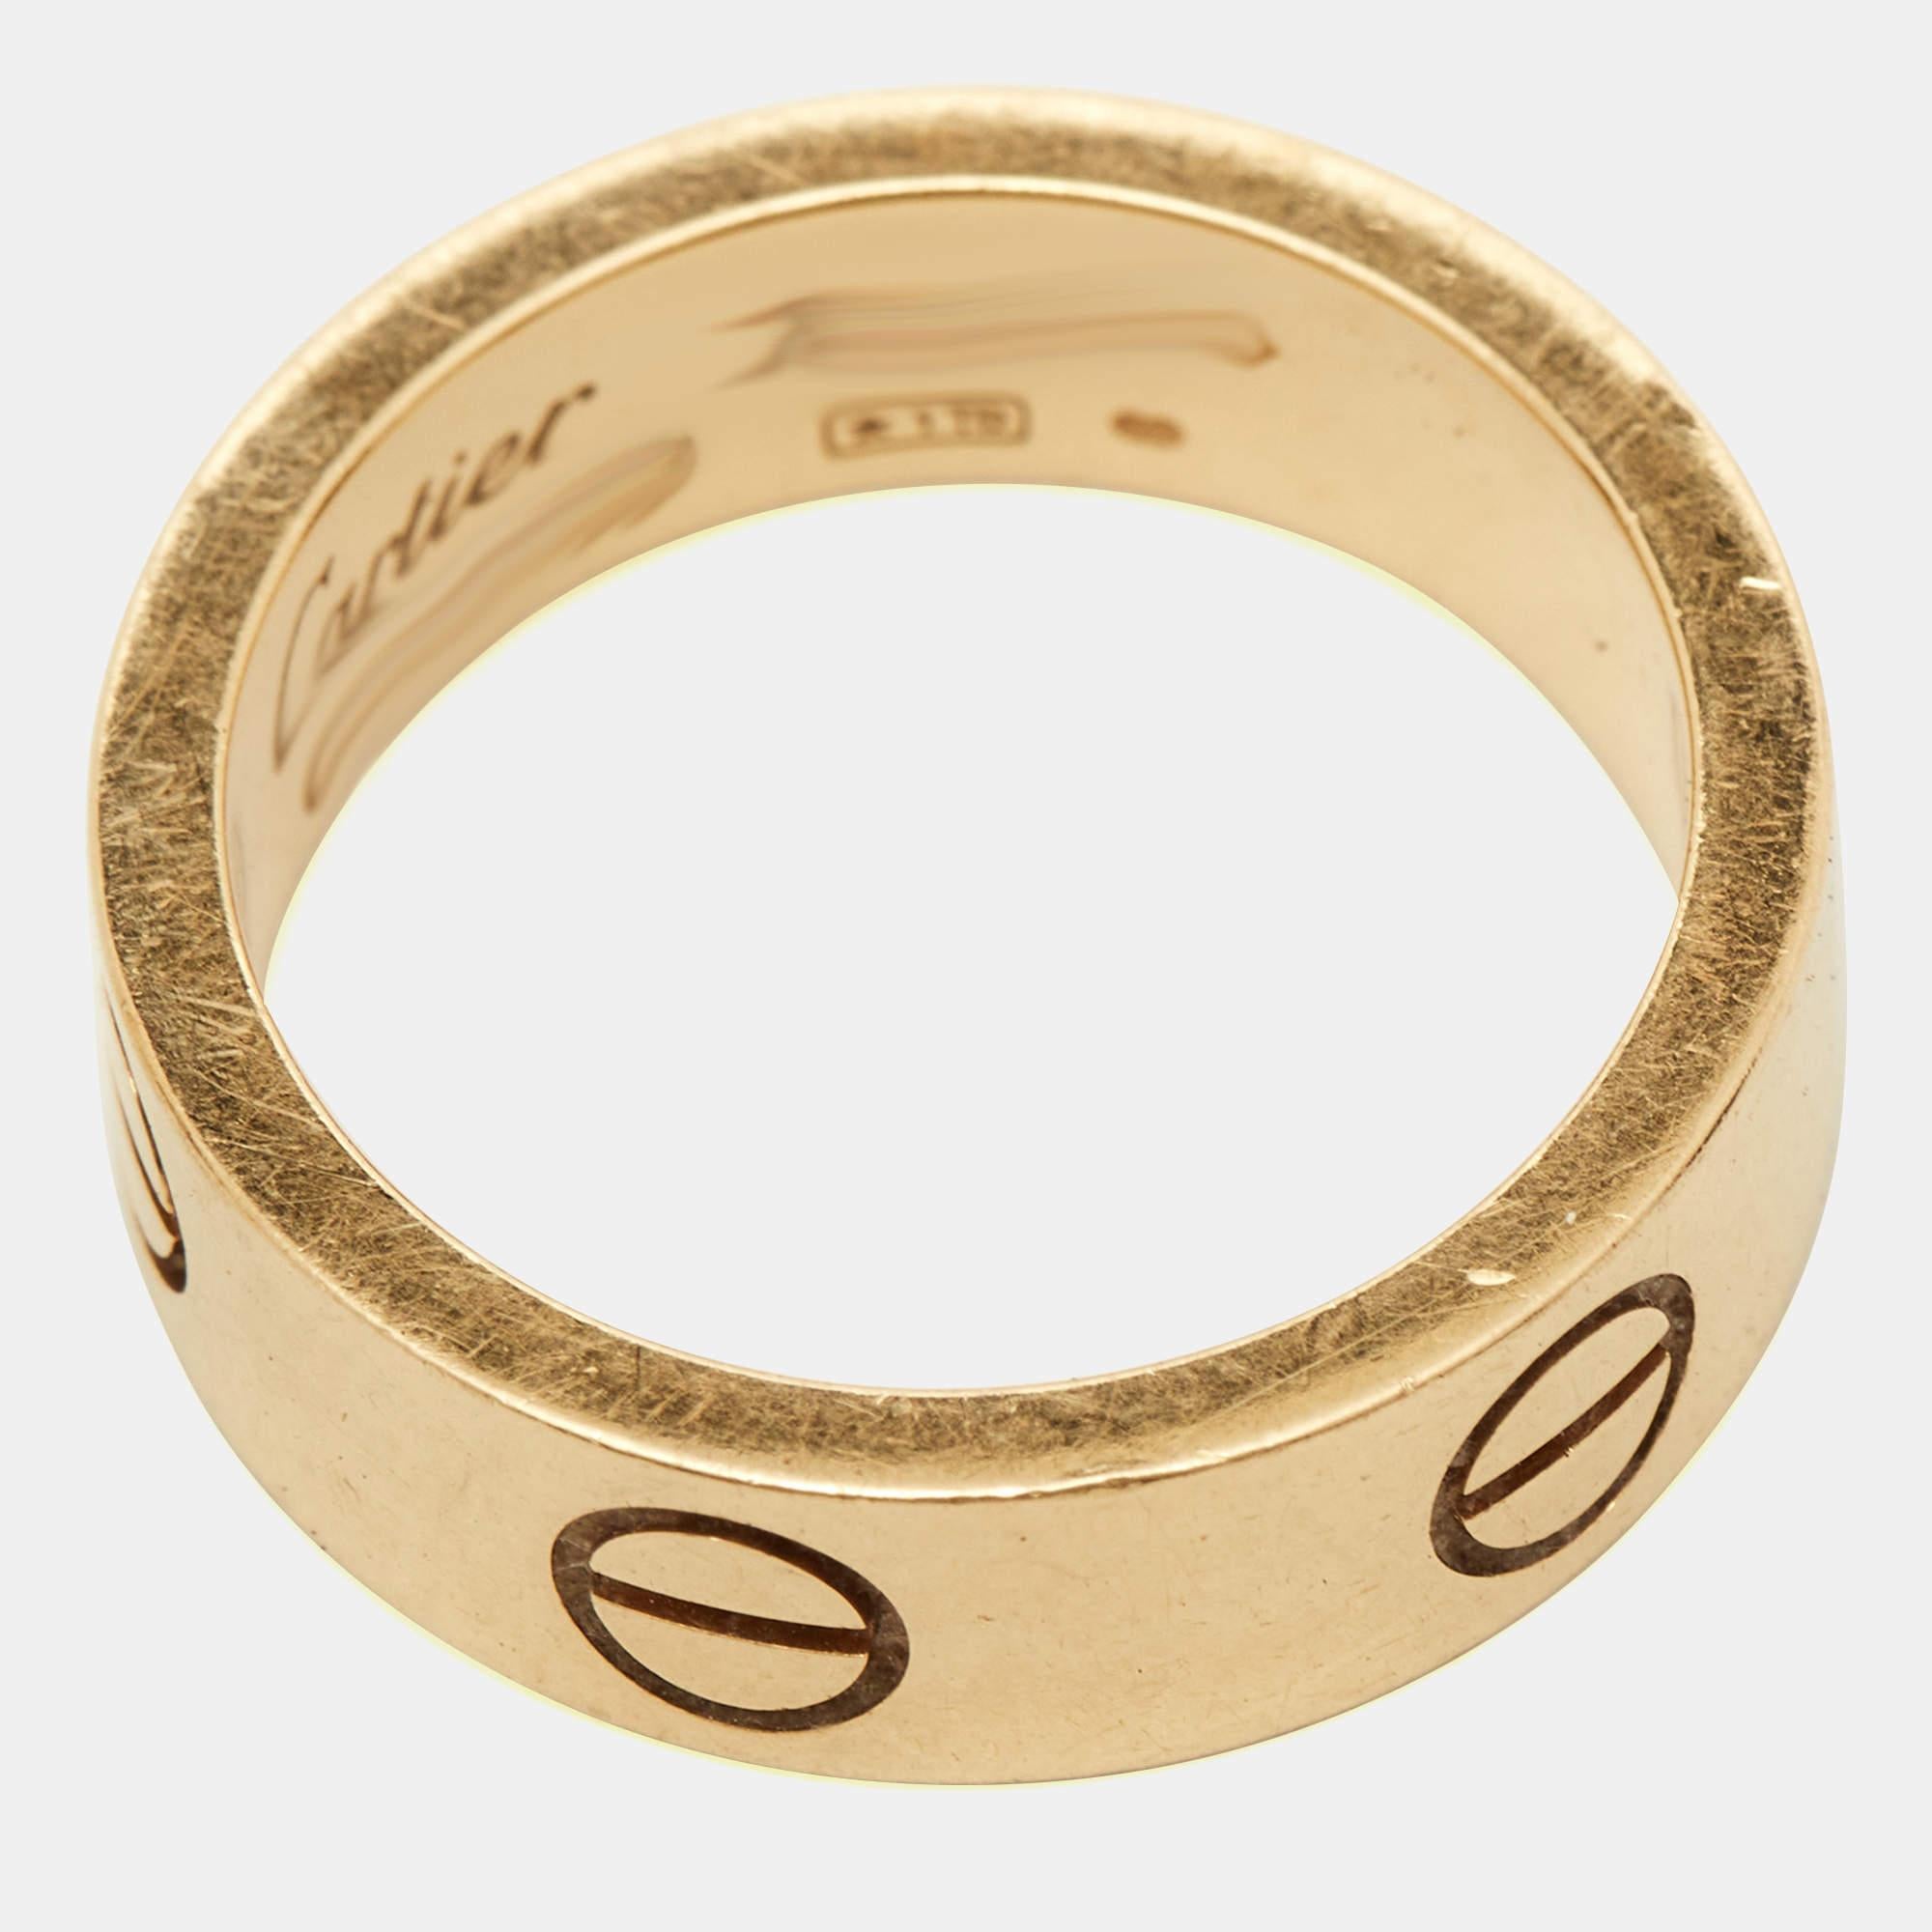 Dieser atemberaubende Love-Ring ist eine Ikone für Stil und Luxus. Dieser Ring aus 18-karätigem Gelbgold ist mit Schraubendetails auf der gesamten Oberfläche versehen, die eine versiegelte und gesicherte Verbindung symbolisieren. Dieser Ring wird